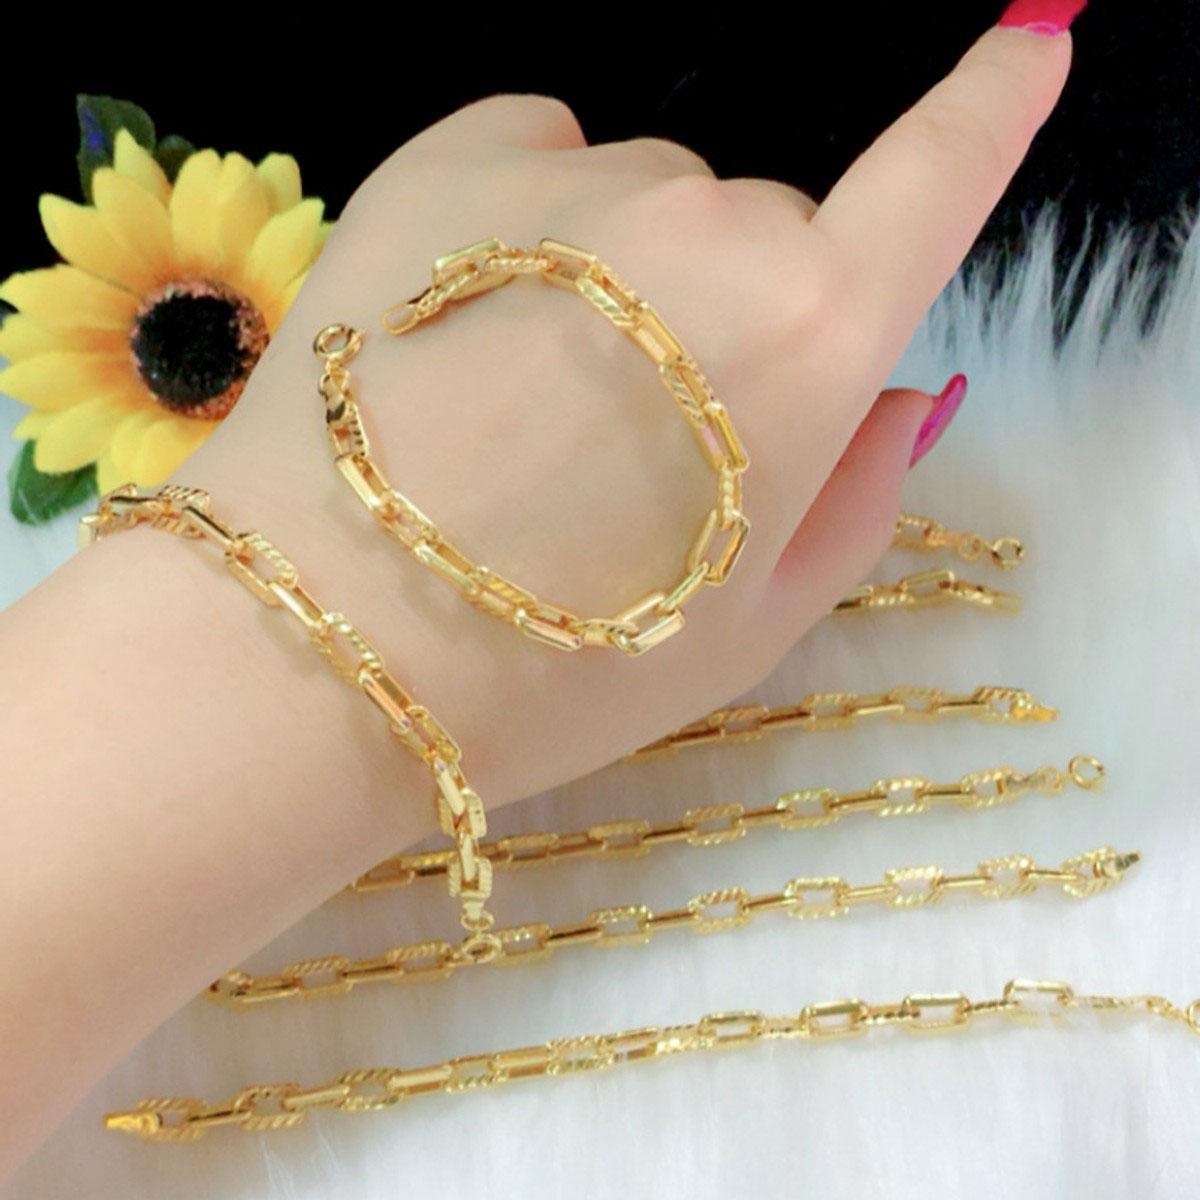 Lắc tay mạ vàng 18k là bộ trang sức hoàn hảo cho những người thích vẻ đẹp mạ vàng rực rỡ. Với thiết kế sang trọng và độc đáo, chúng sẽ khiến bạn cảm thấy tự tin và yêu đời hơn. Đừng bỏ lỡ hình ảnh liên quan đến từ khóa này để tìm kiếm sự hoàn hảo.